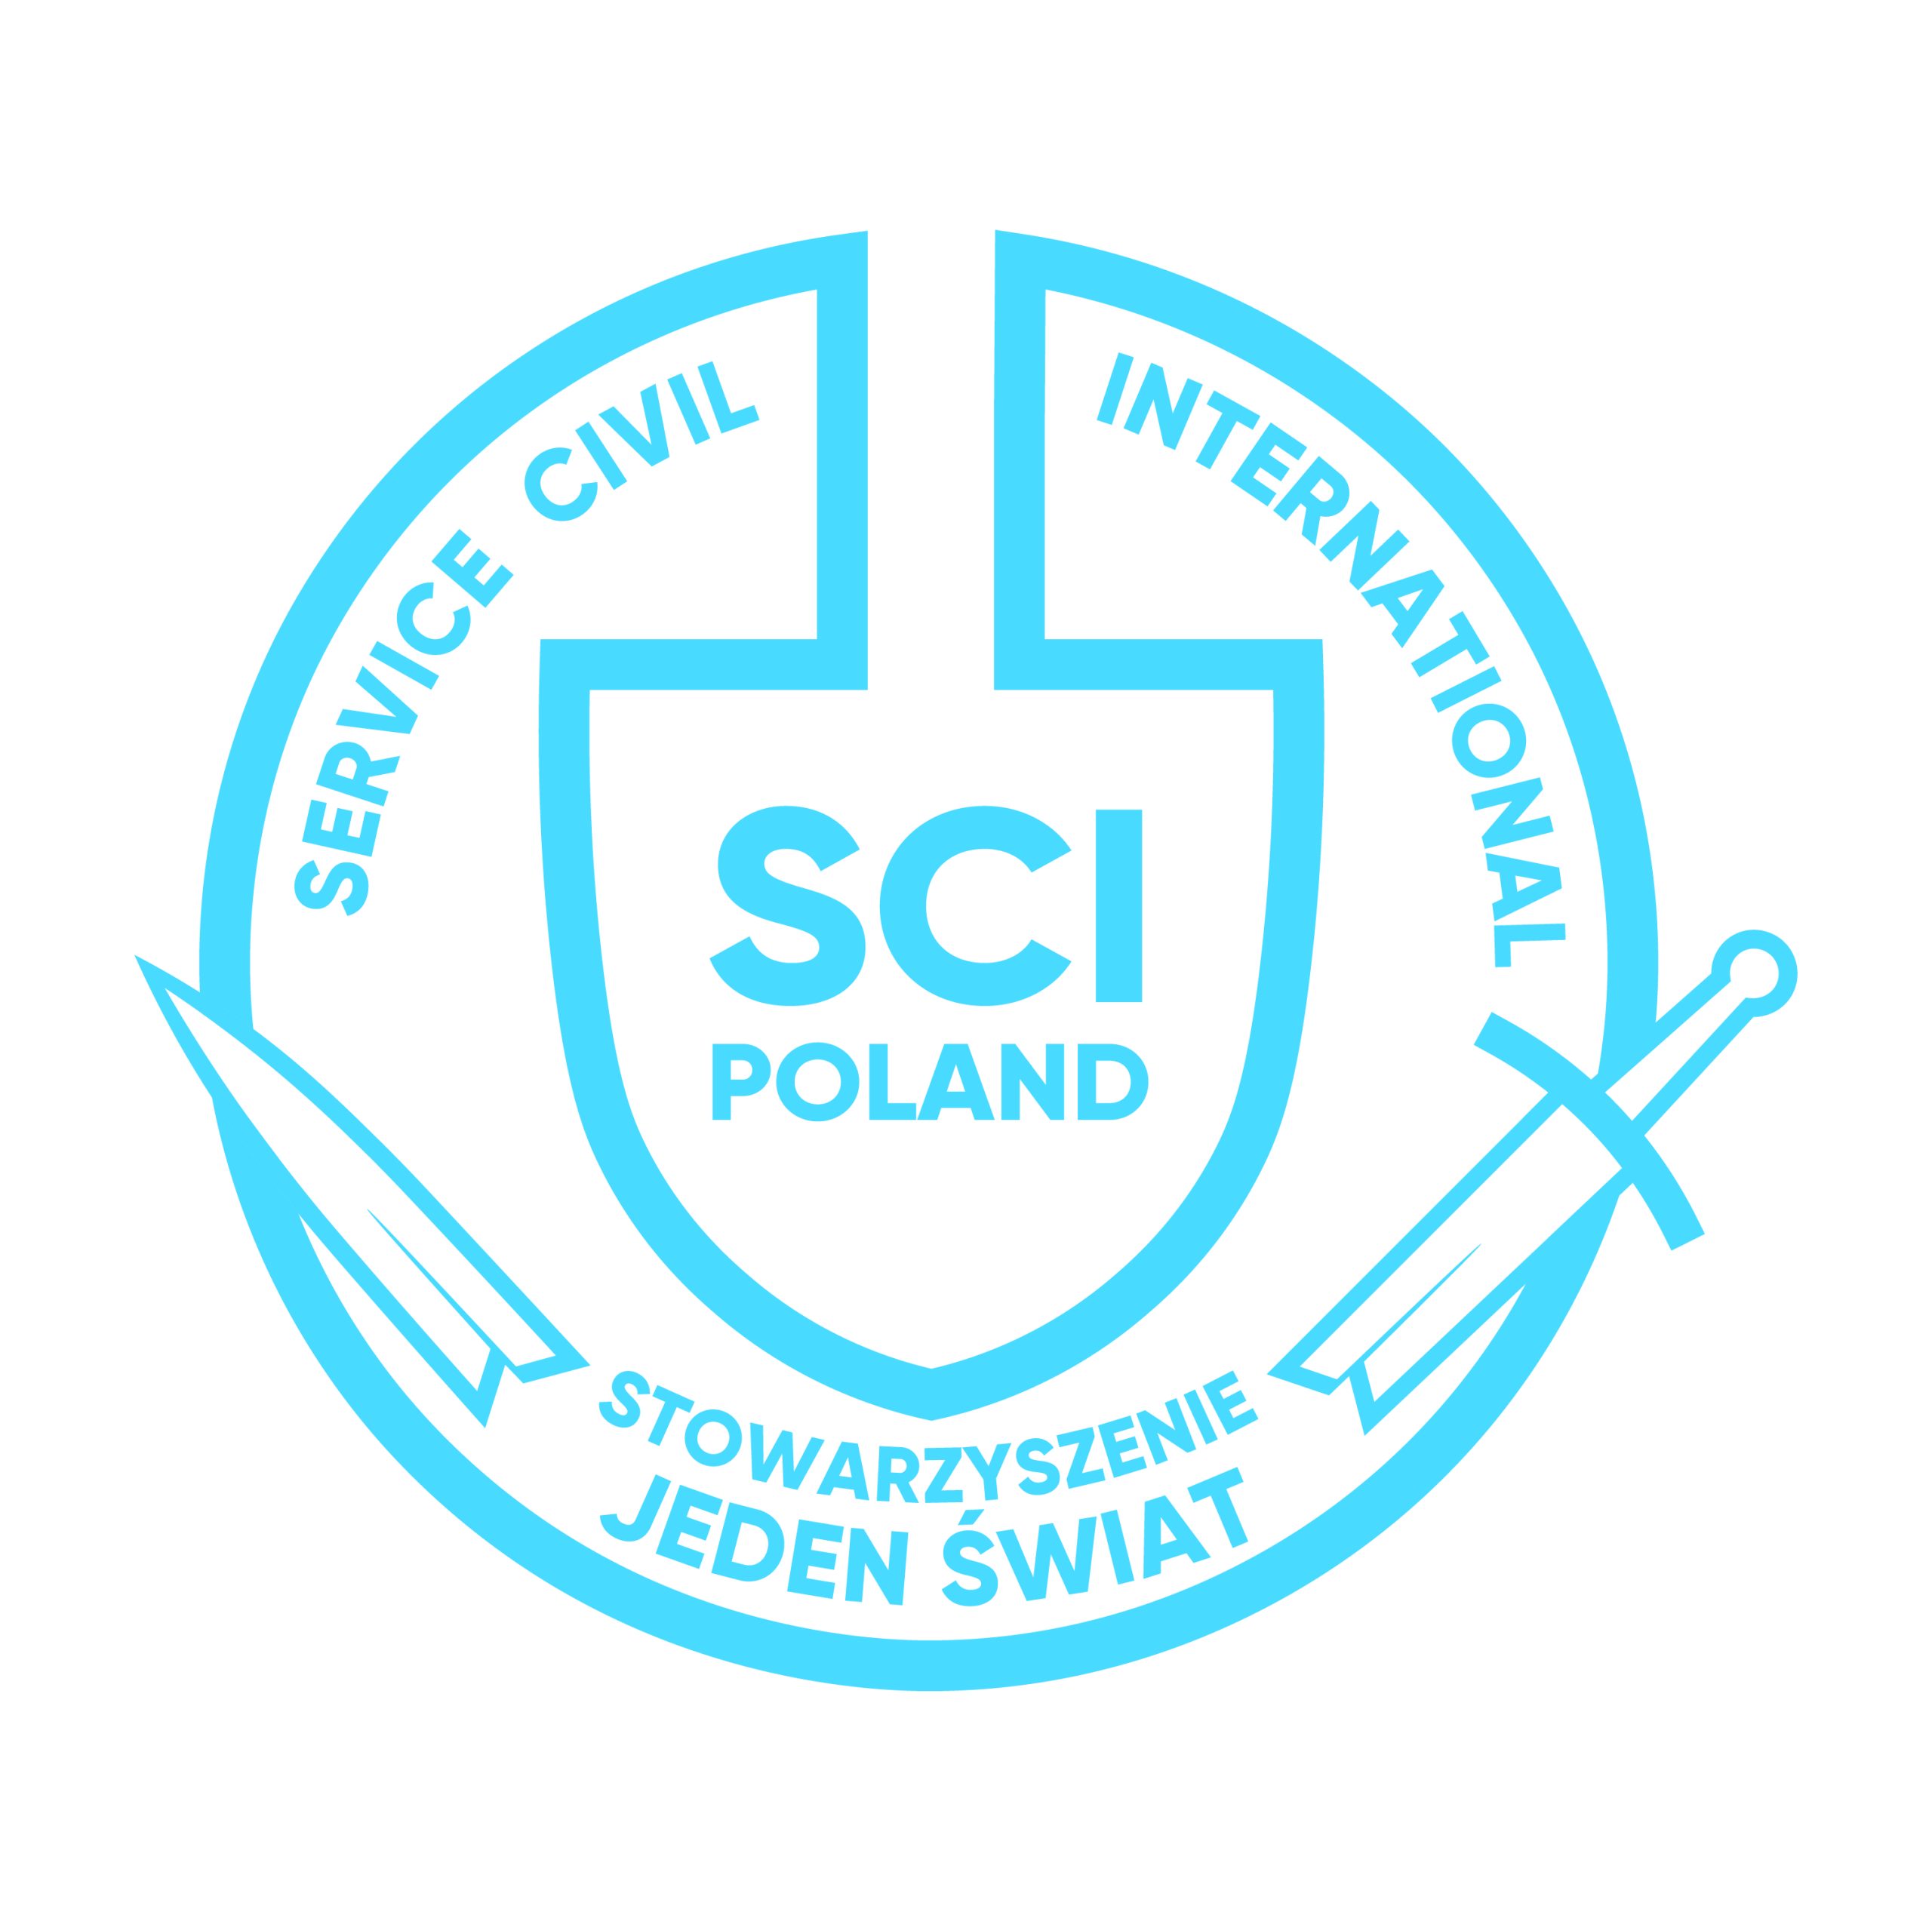 Stowarzyszenie Jeden Swiat (SCI Poland)